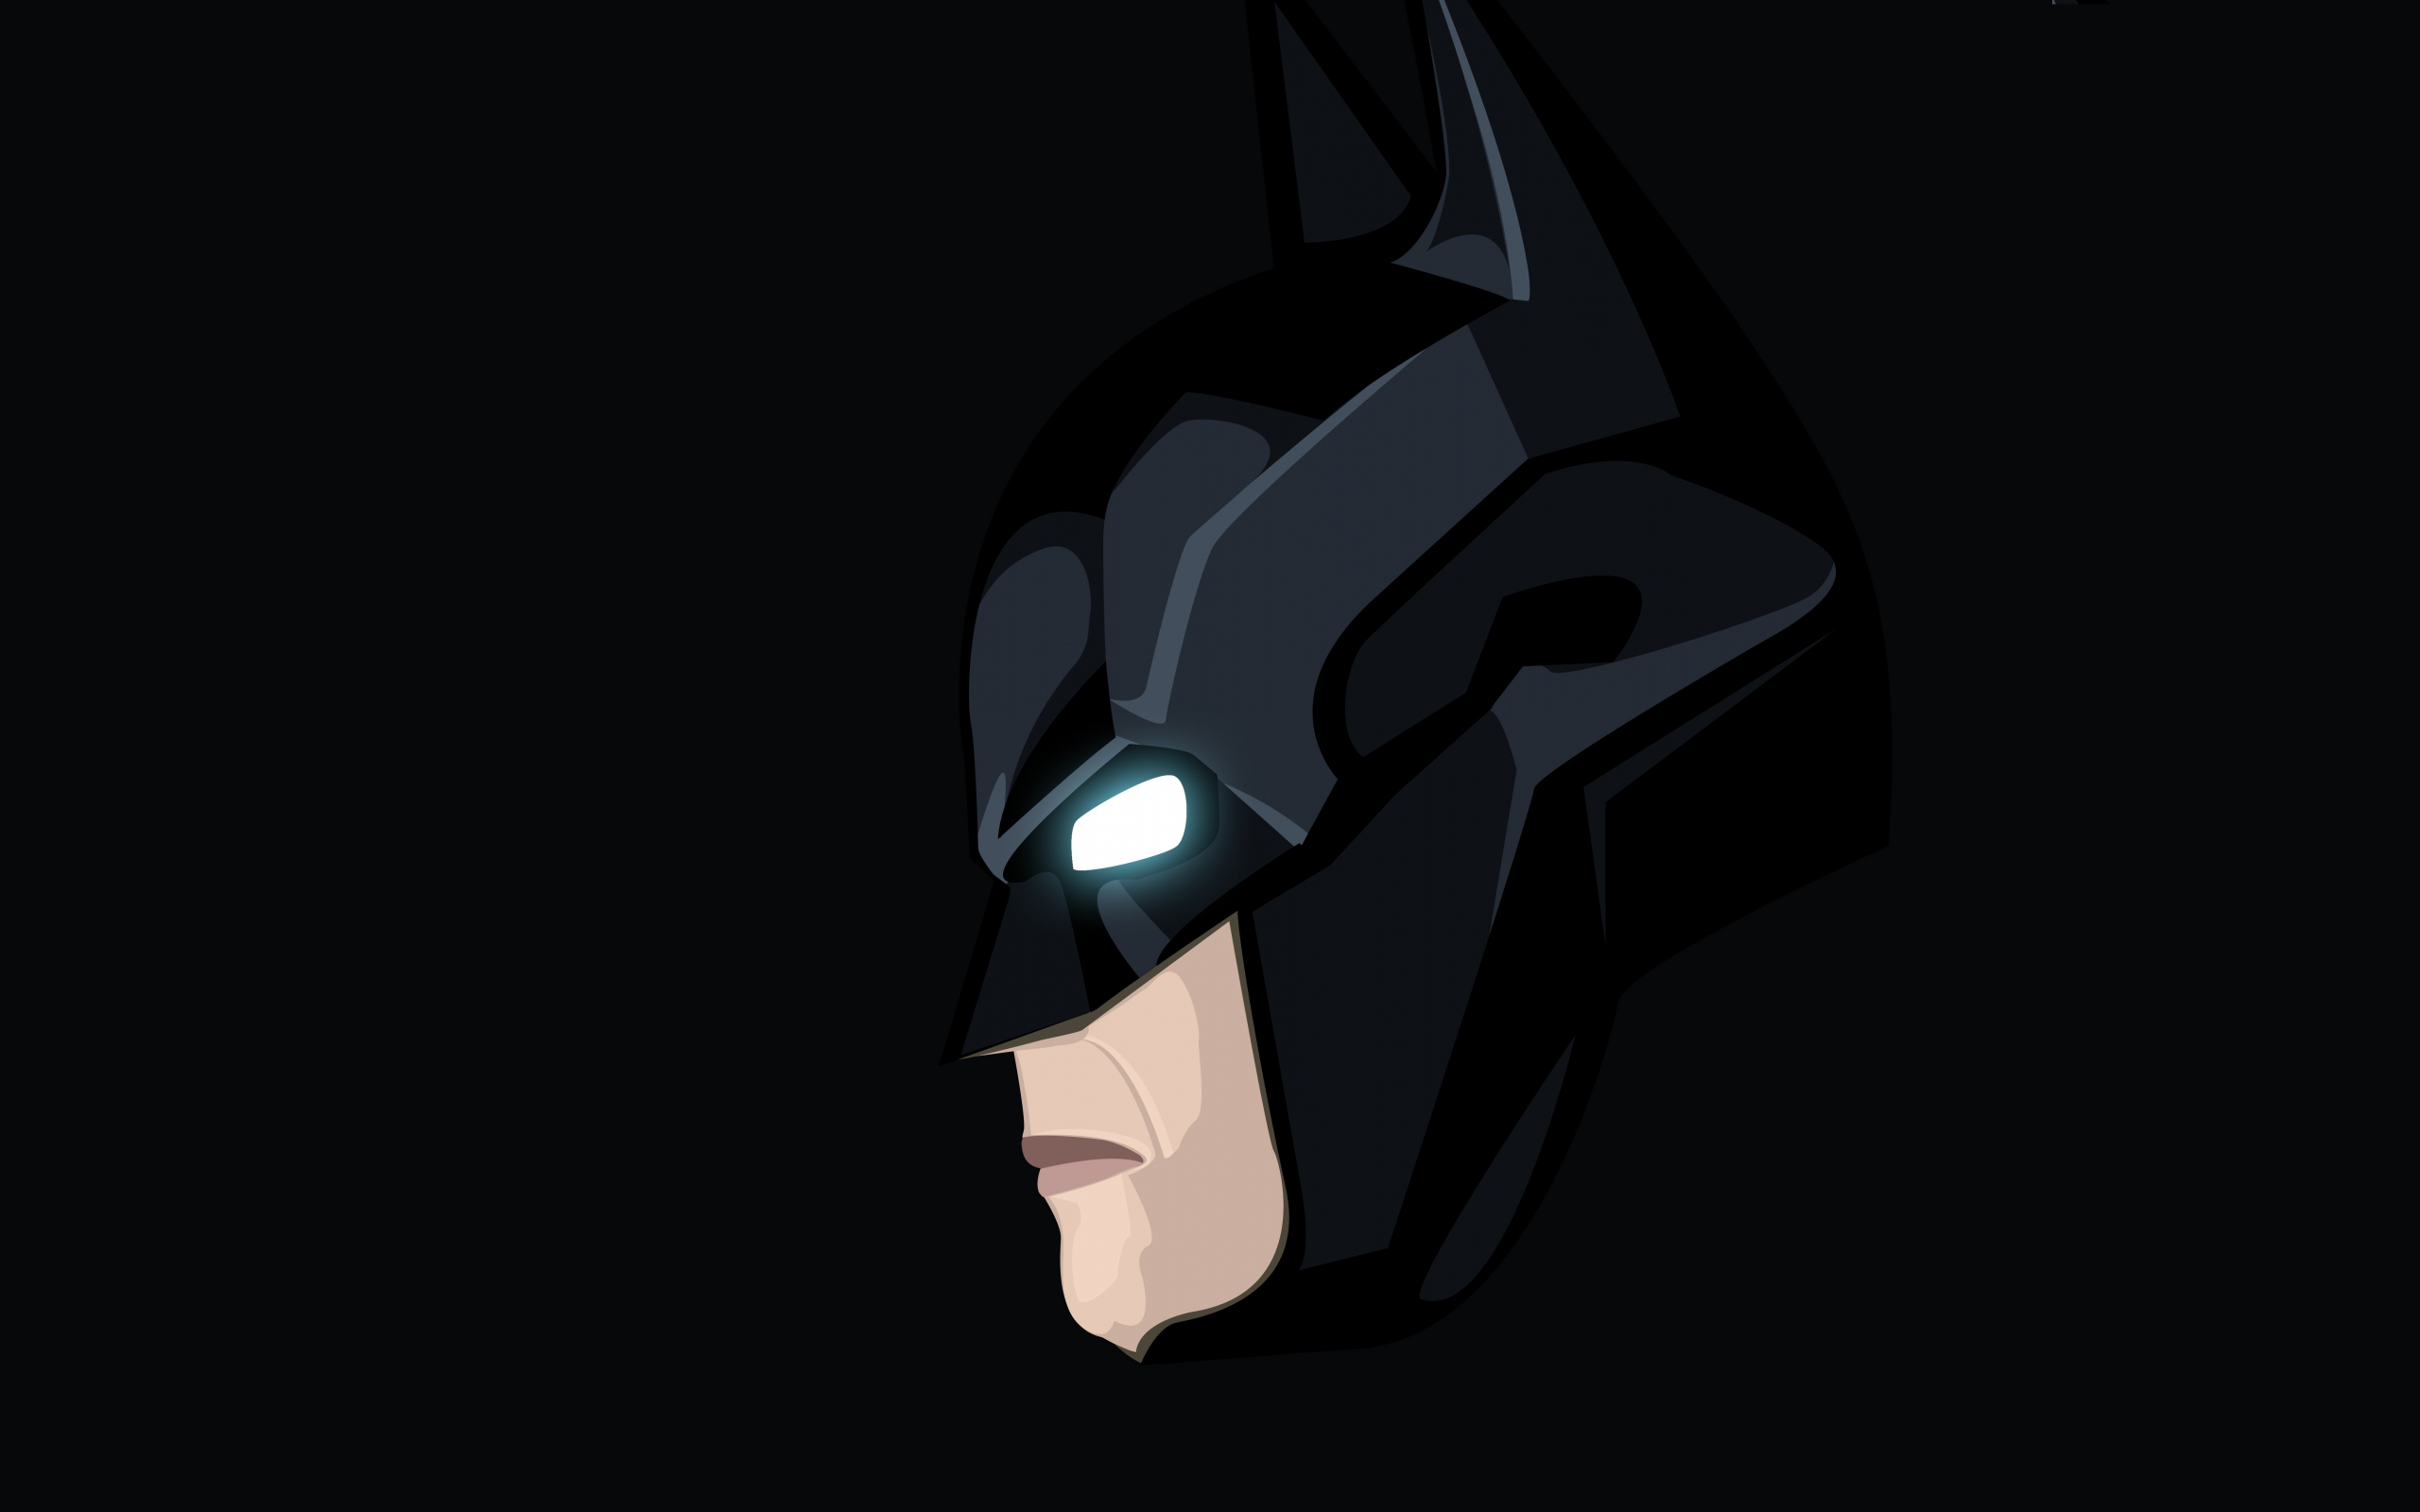 Download Wallpaper 2560x1600 Dark Knight Batman Minimal Art Dual